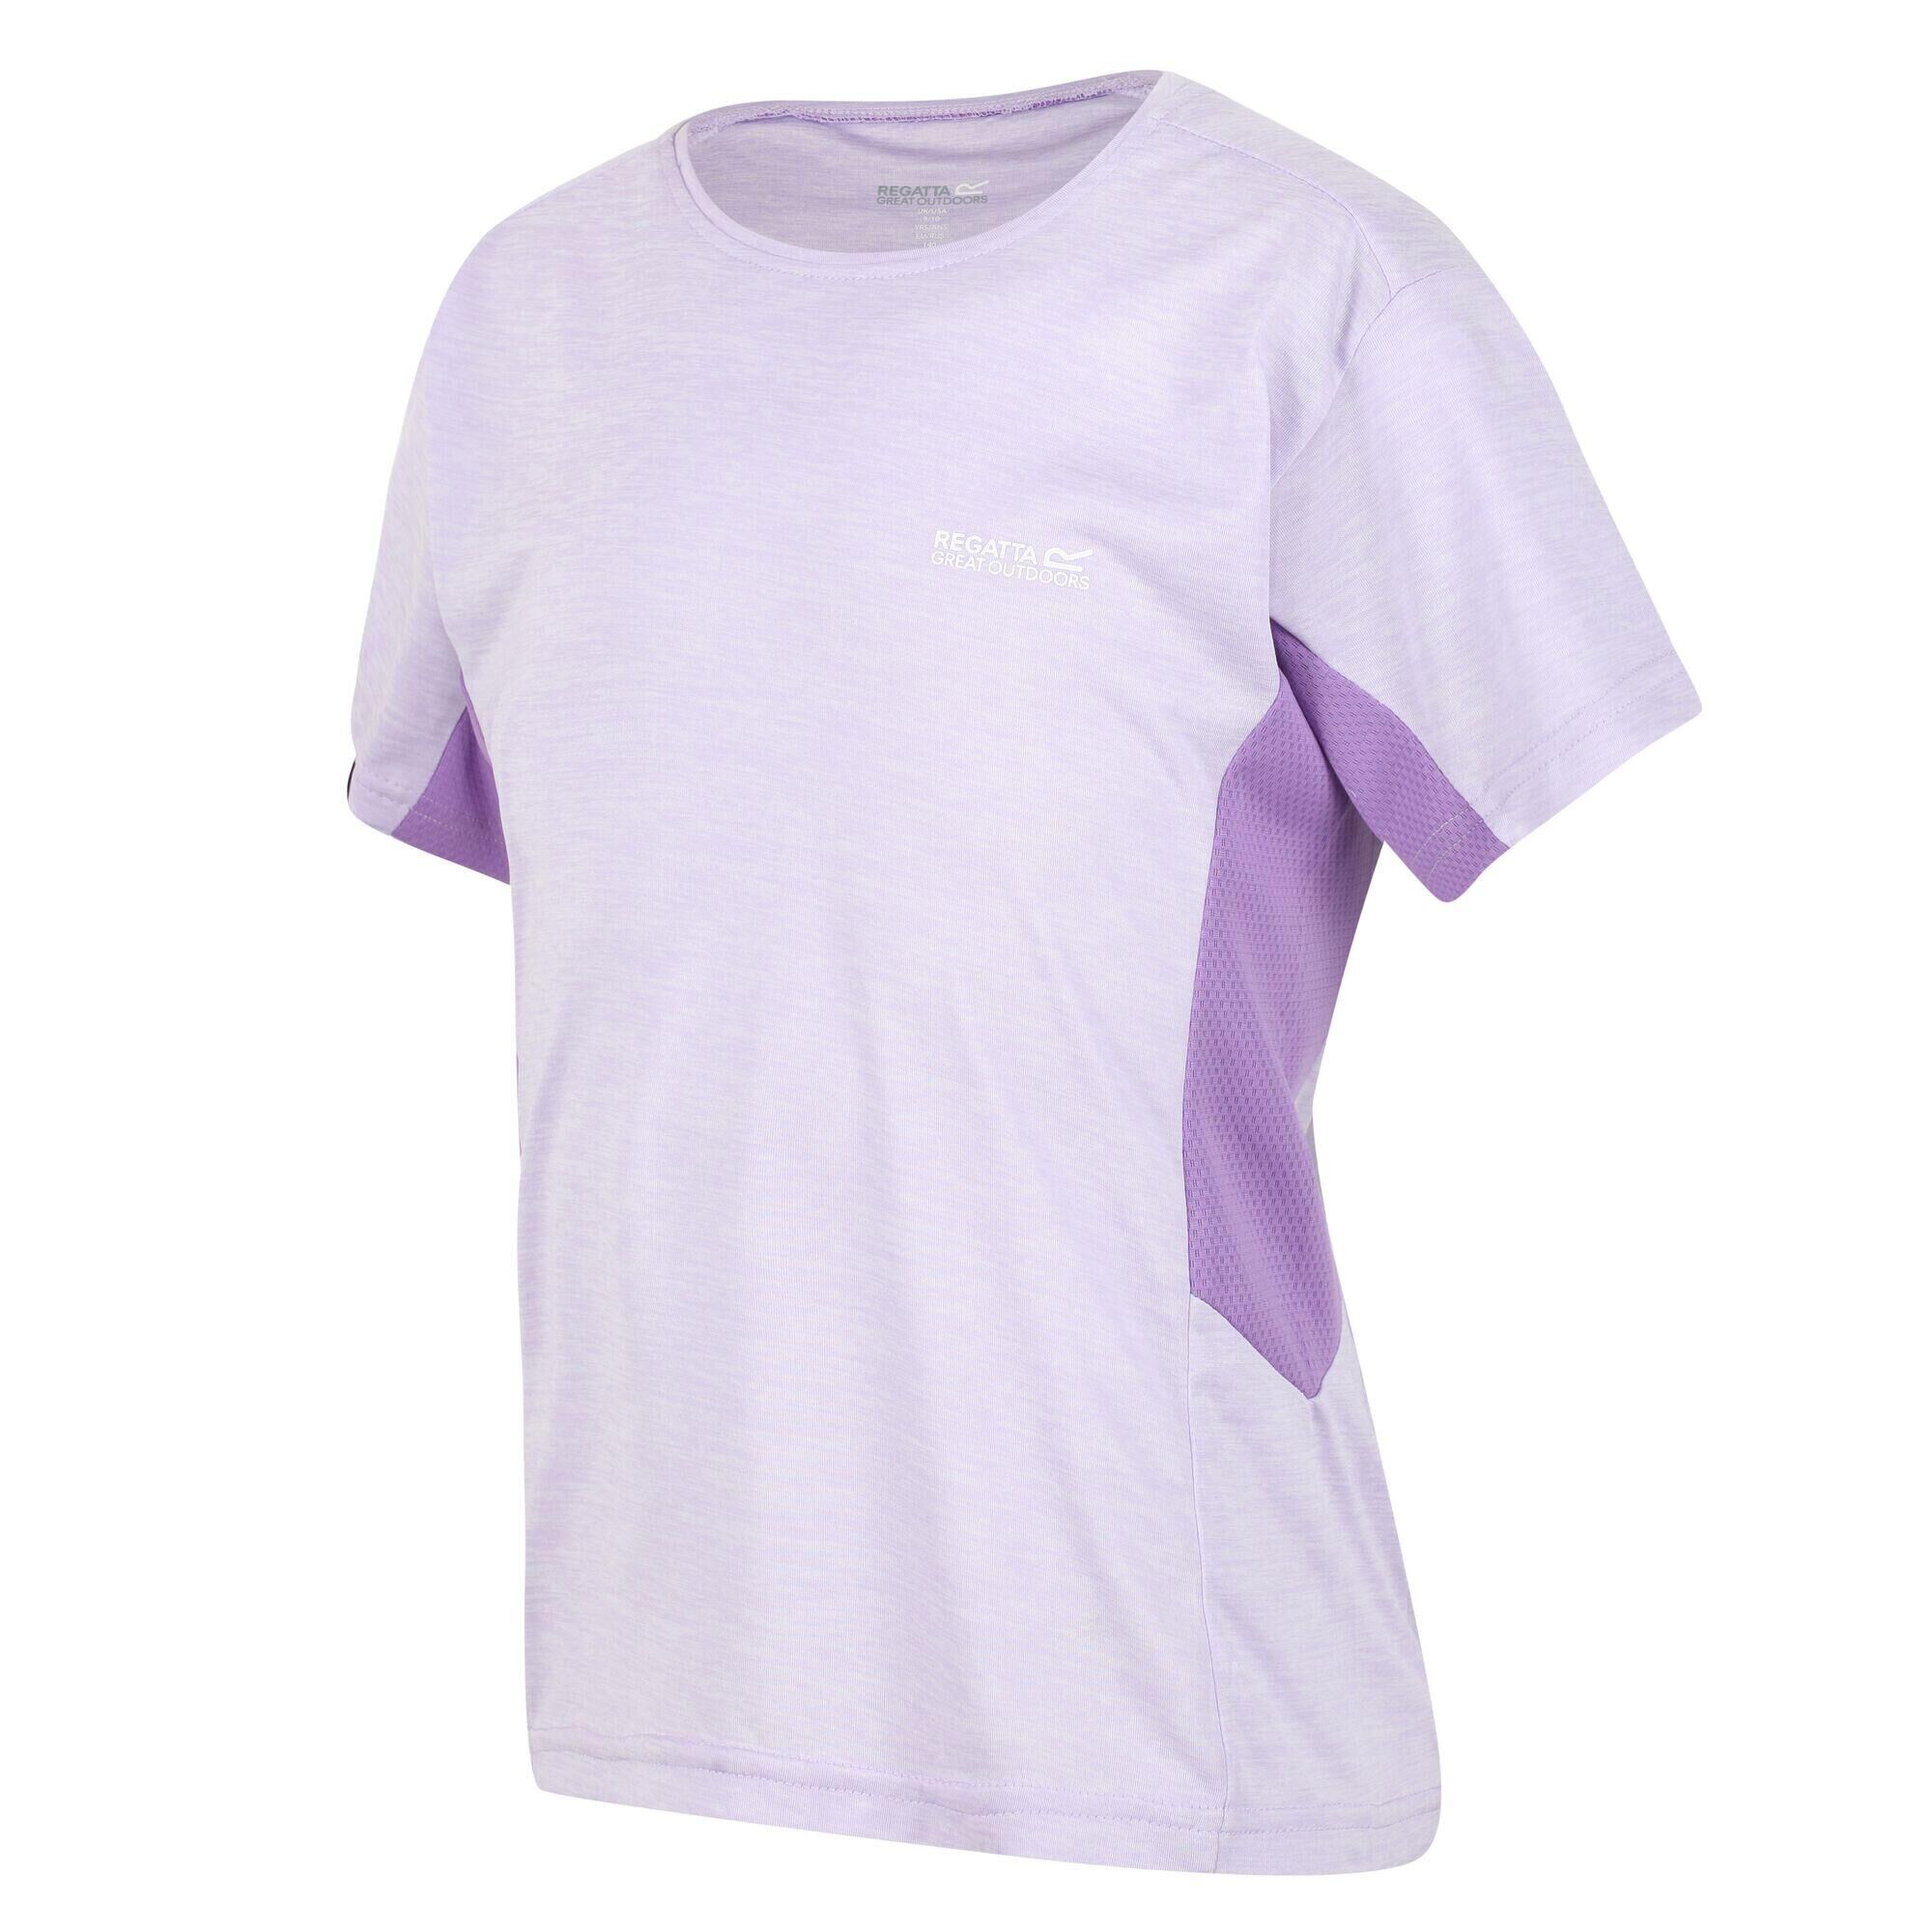 REGATTA Takson III Kids Hiking Short Sleeve T-Shirt - Pastel Lilac